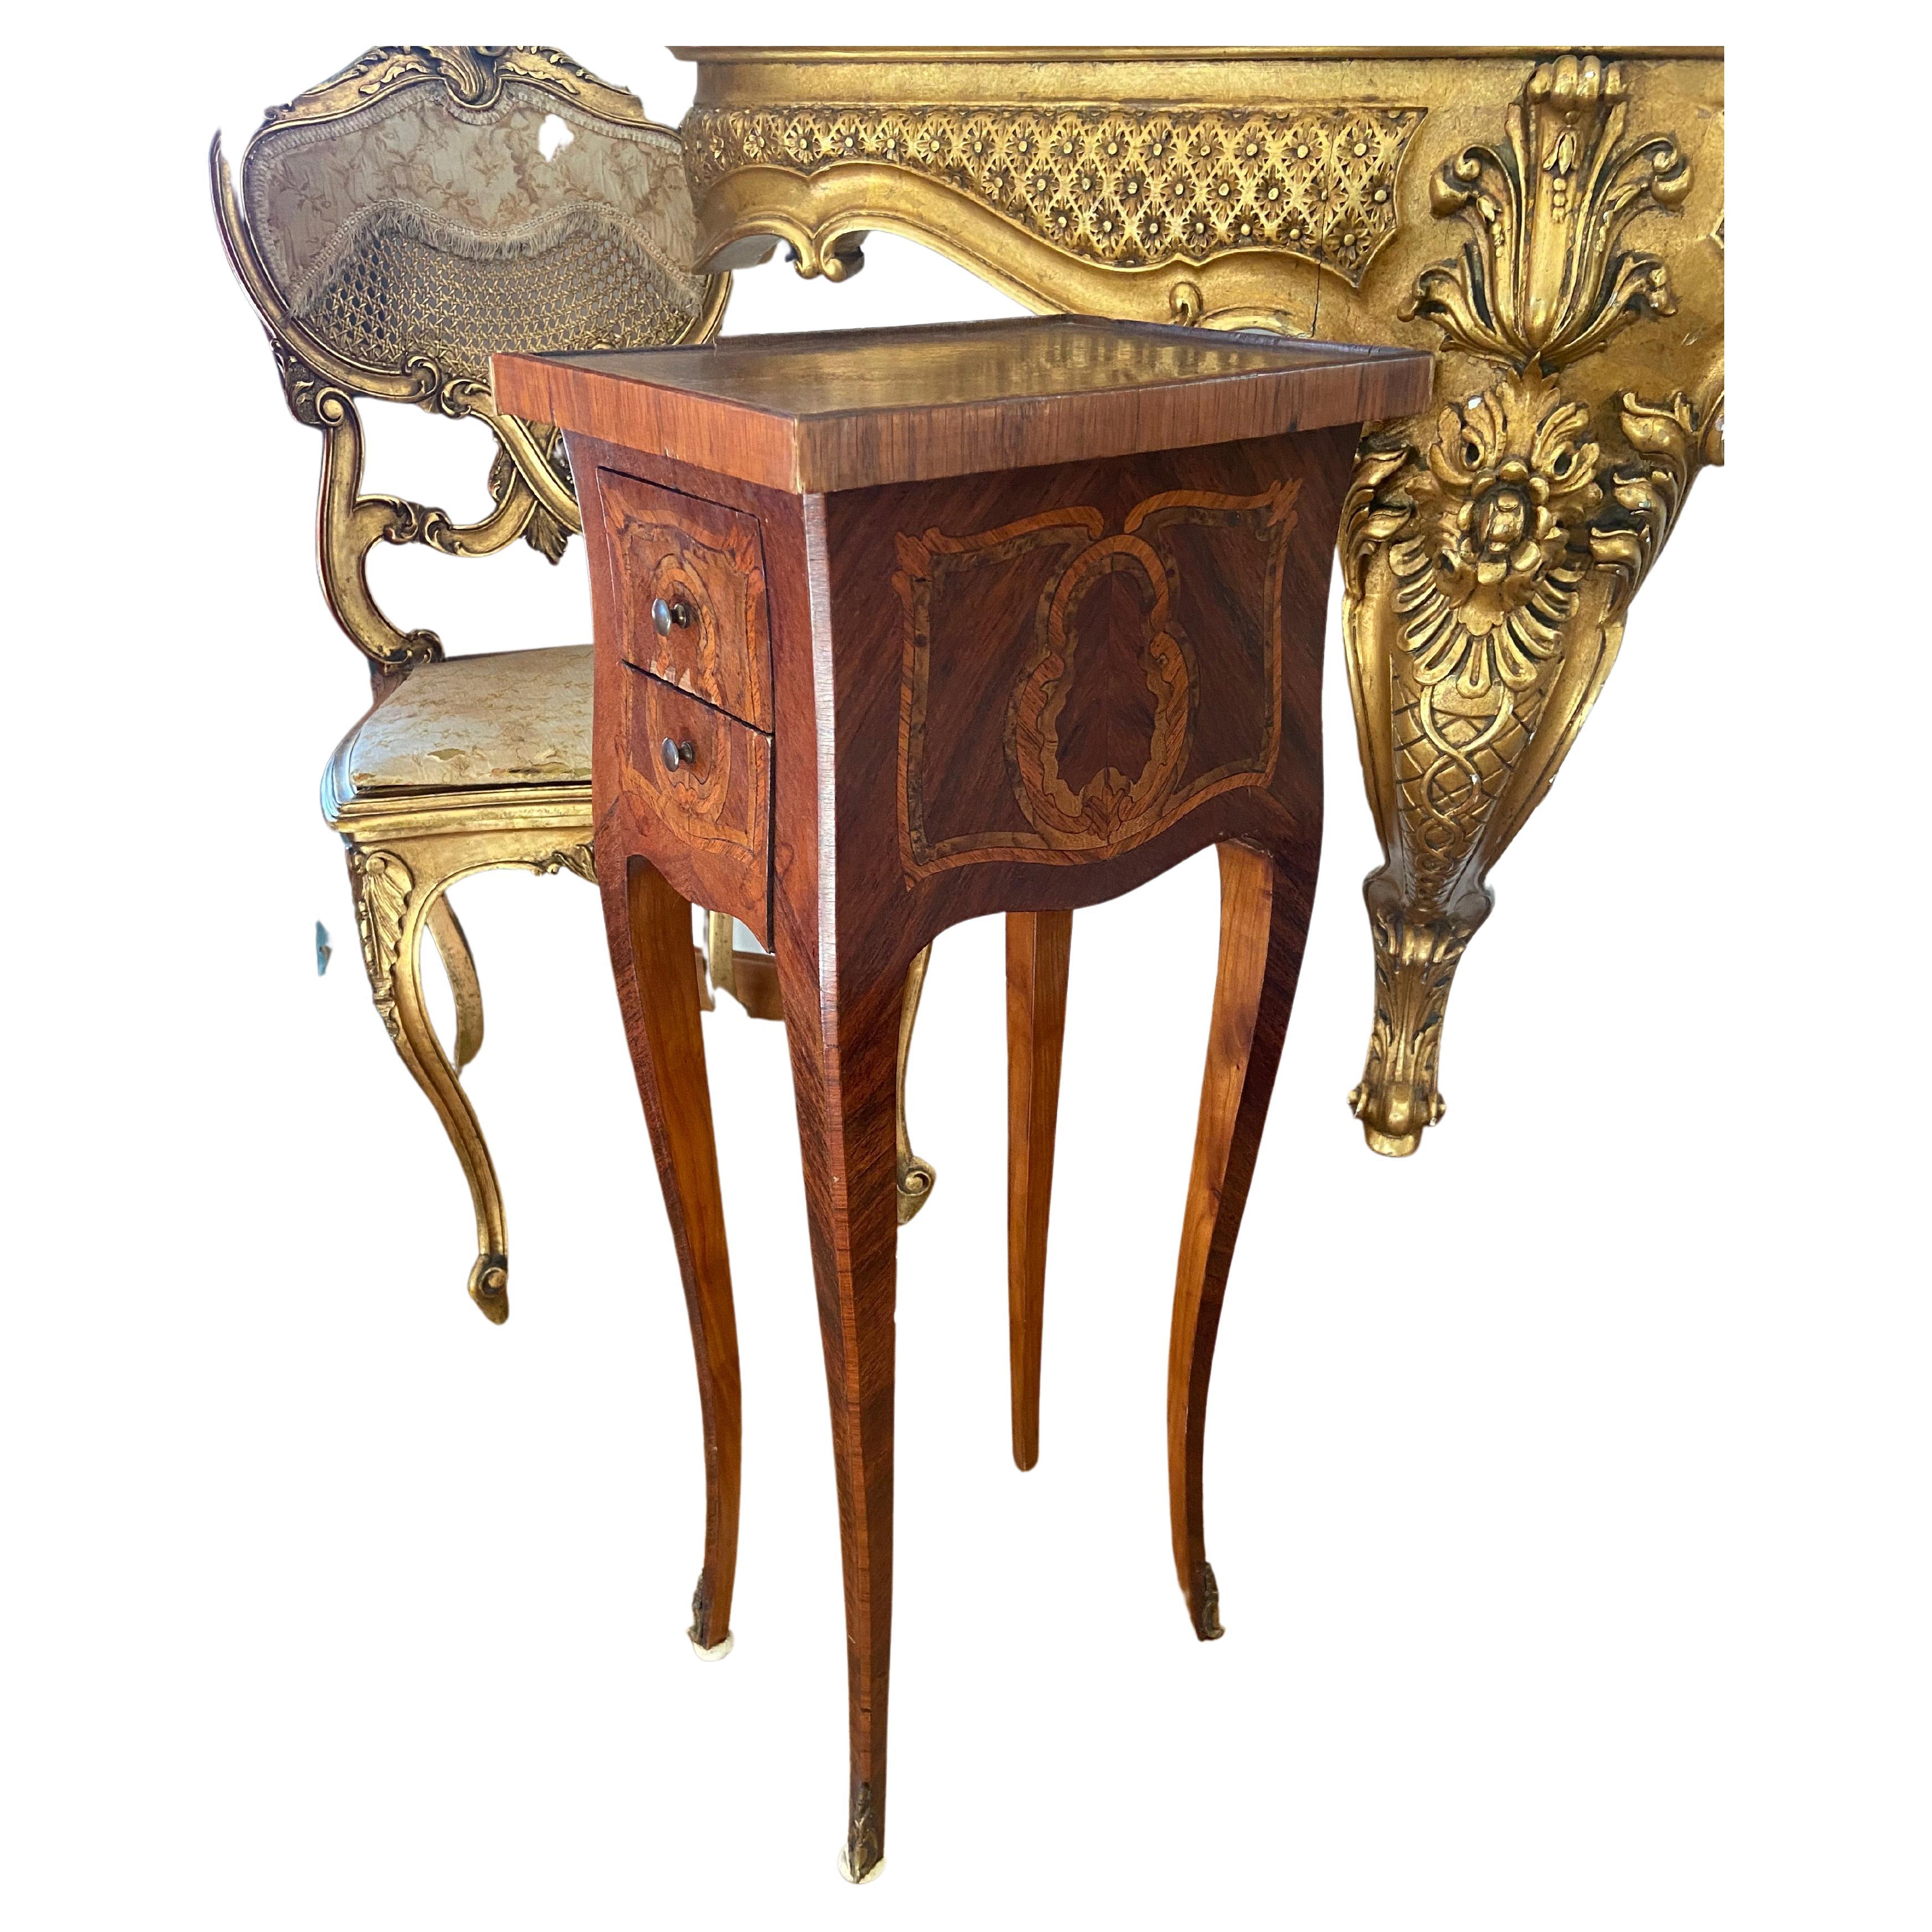 Table d'appoint française du 19ème siècle de style Louis XV en marqueterie d'acajou